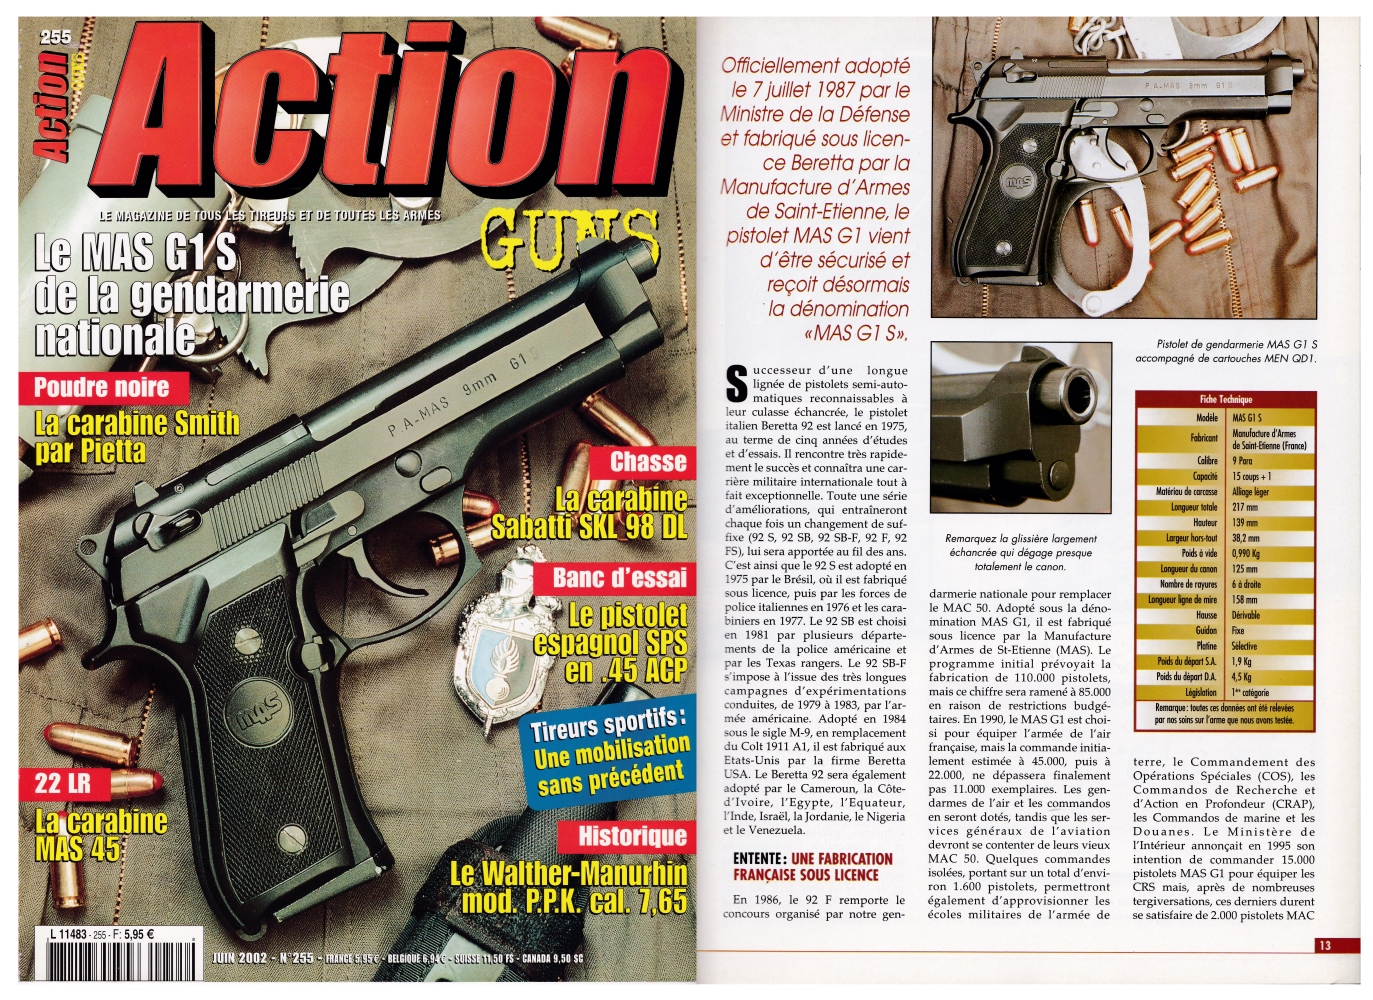 Le banc d’essai du pistolet MAS G1 S a été publié sur 9 pages dans le magazine Action Guns n°255 (juin 2002).